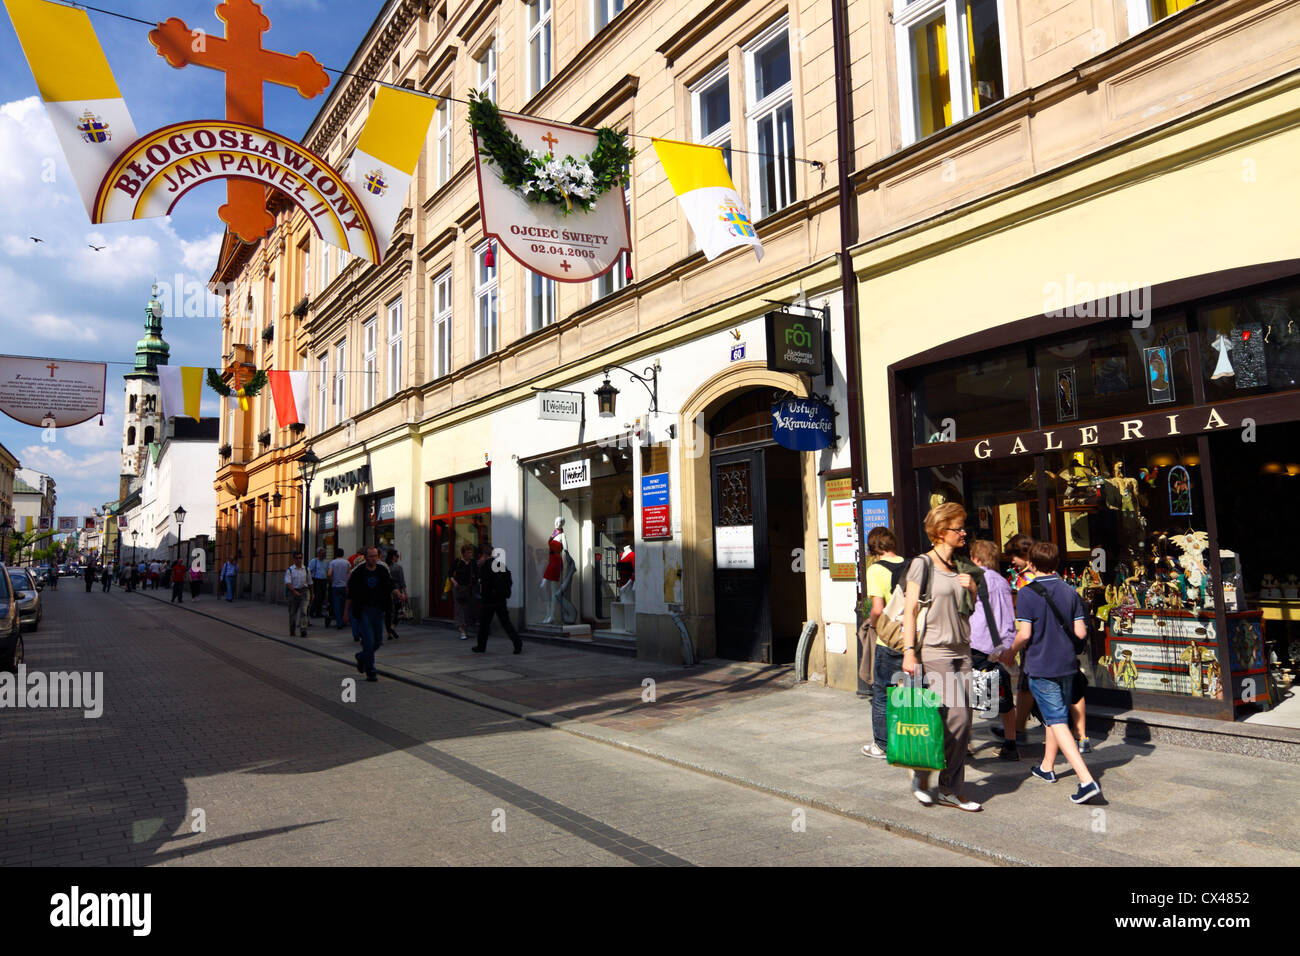 La calle Grodzka Krakows con decoración conmemorativa de la beatificación de Juan Pablo II y la gente caminando y compras. Polonia Foto de stock